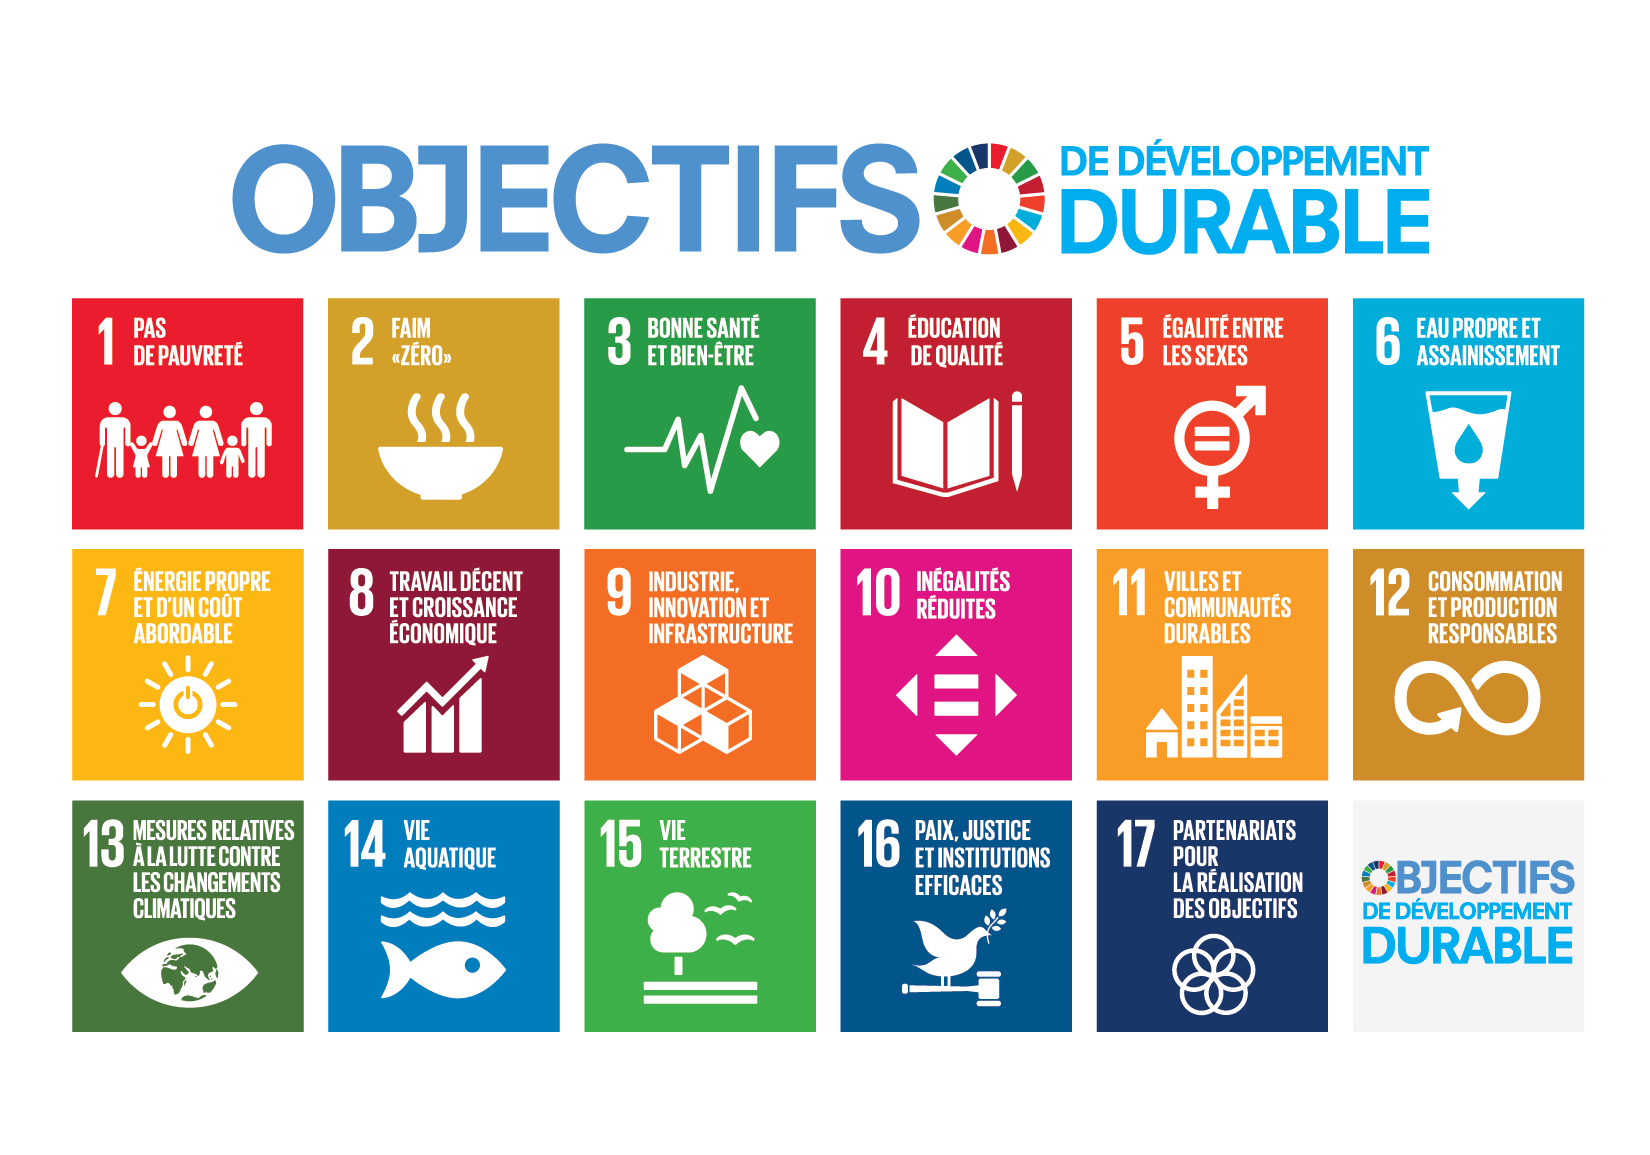 Le 25 septembre 2015, les 193 Etats membres des Nations unies ont adopté l’Agenda 2030 qui fixe 17 Objectifs de développement durable (ODD).